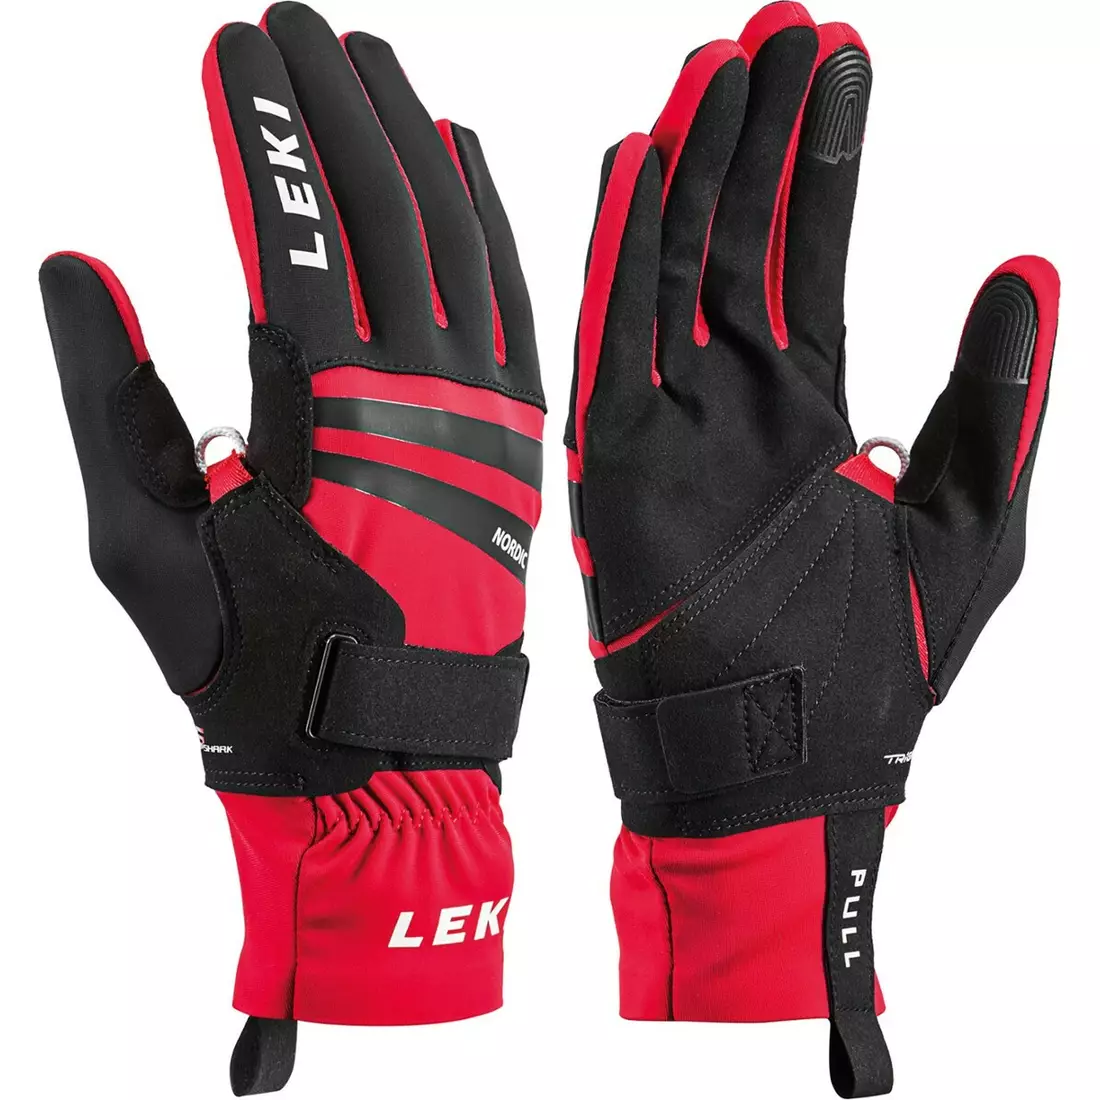 LEKI winter gloves NORDIC SLOPE SHARK black/red 643914301095